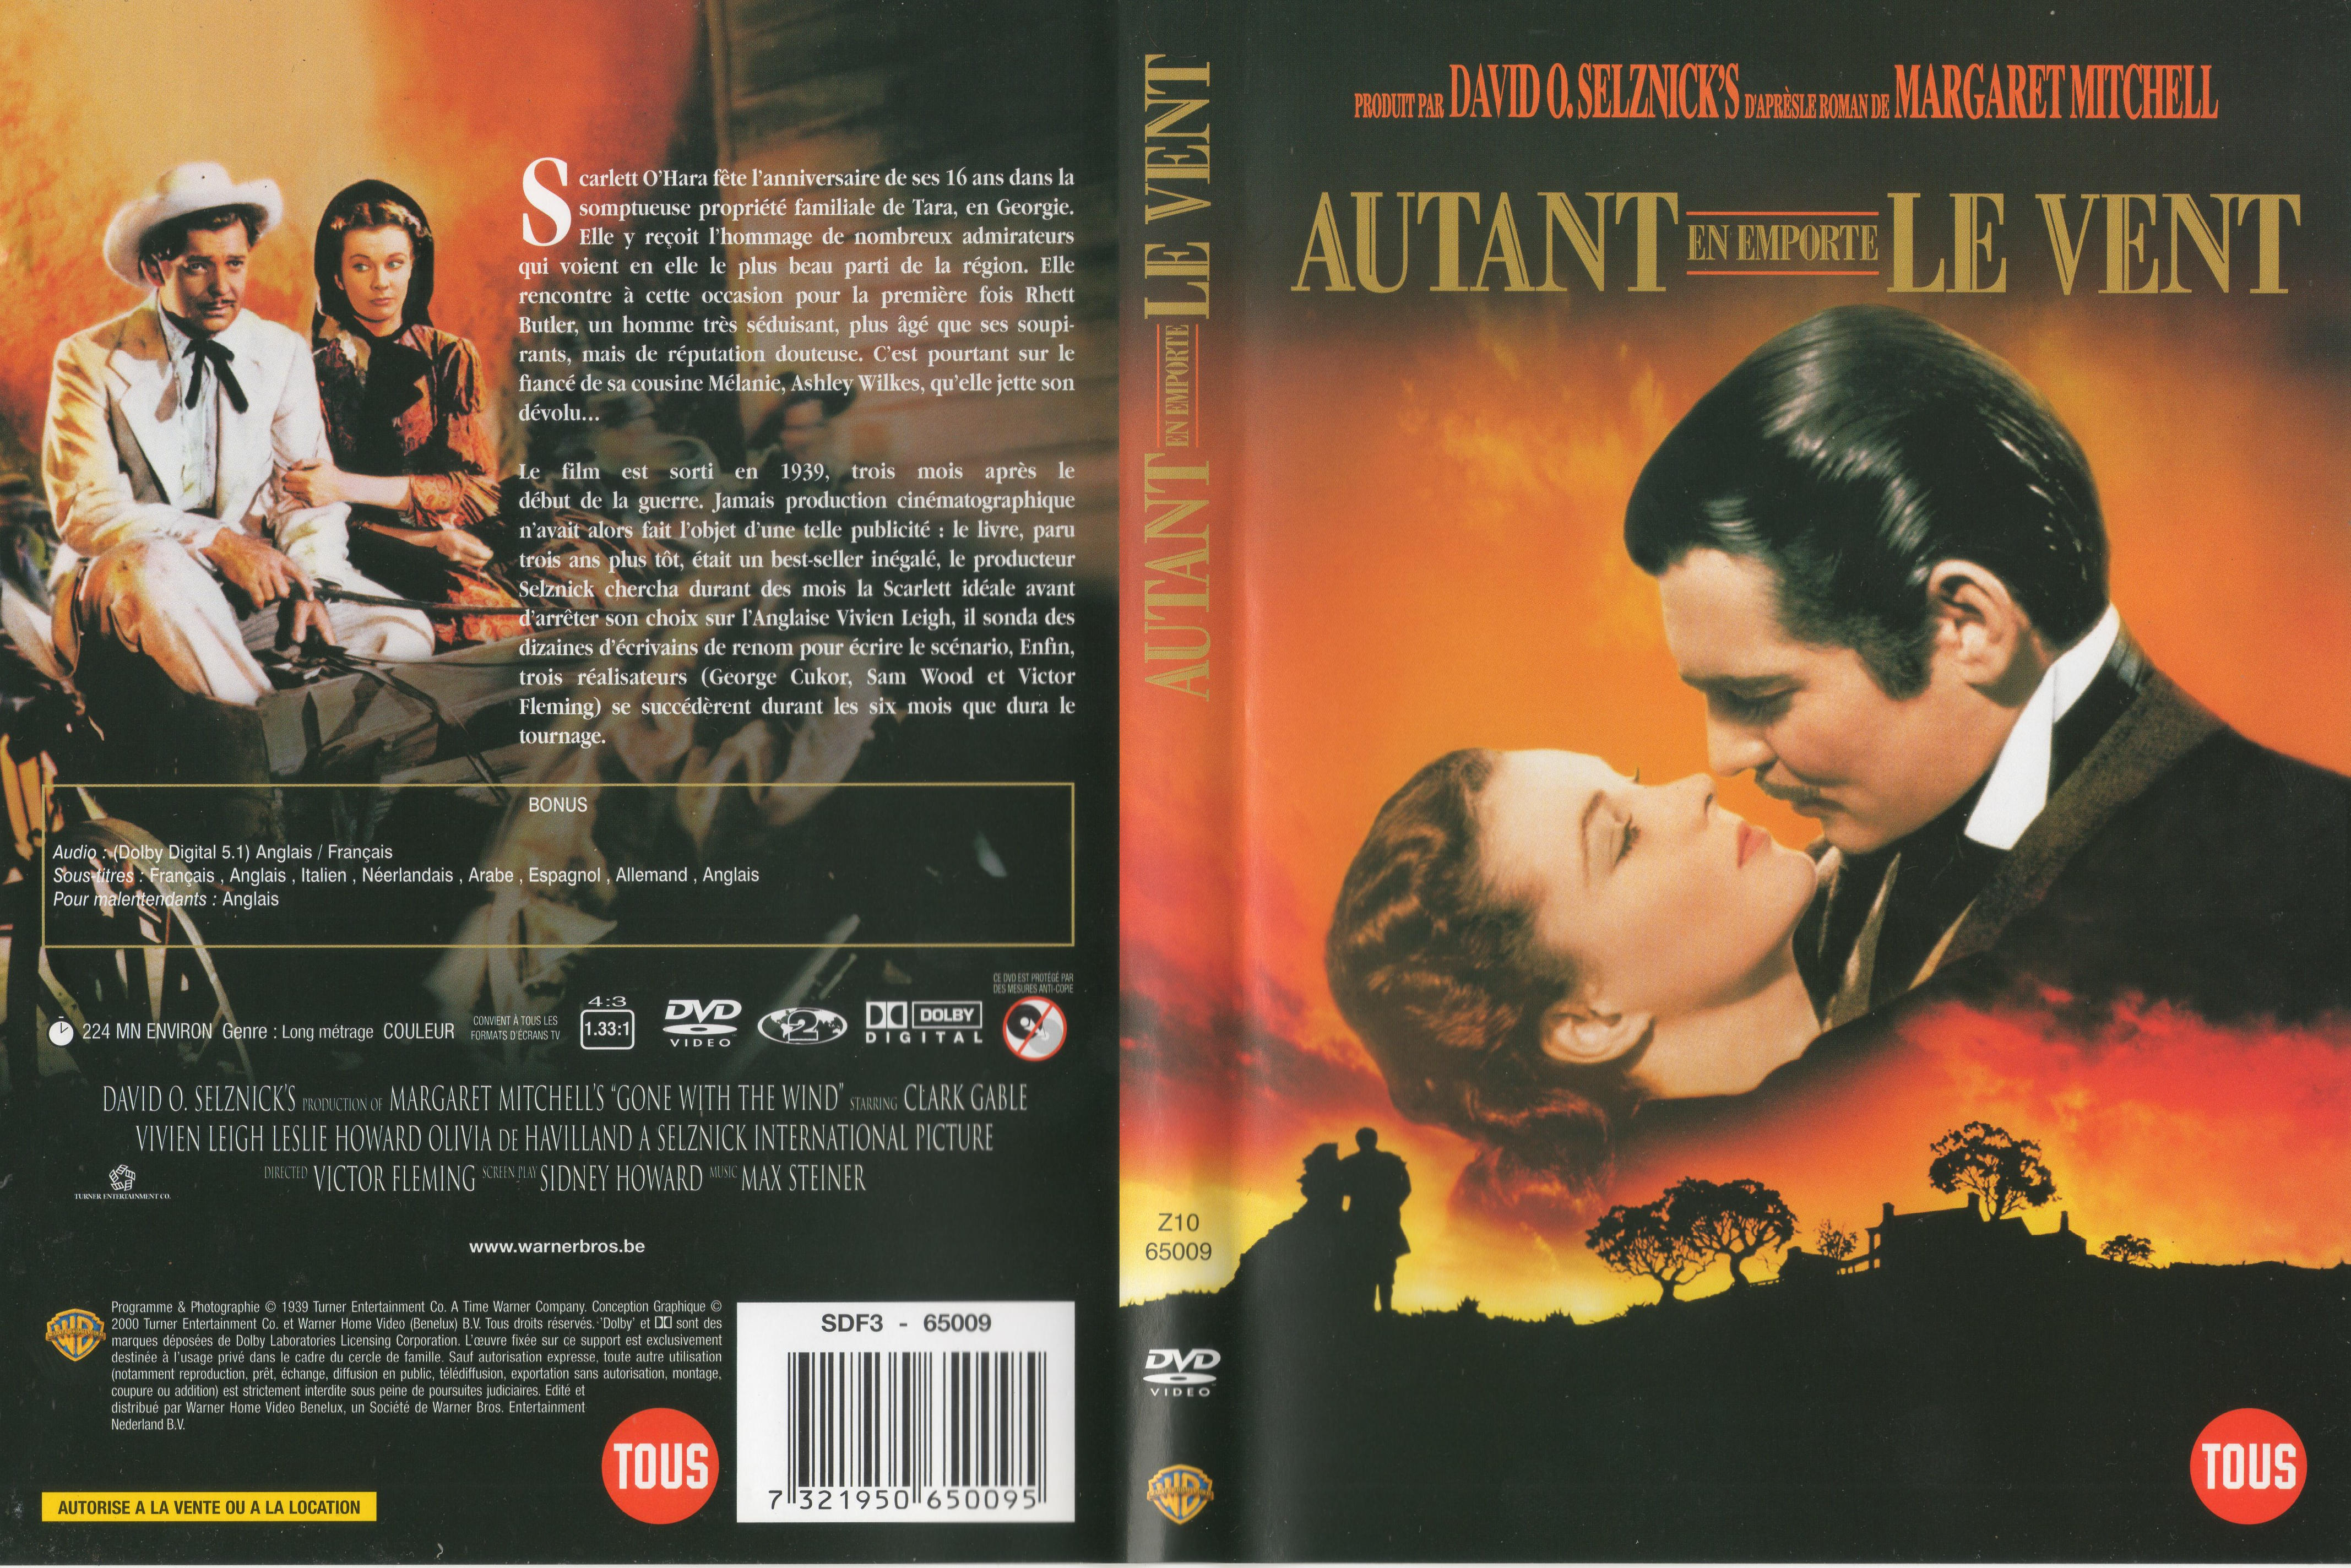 Jaquette DVD de Autant en emporte le vent v2 - Cinéma Passion